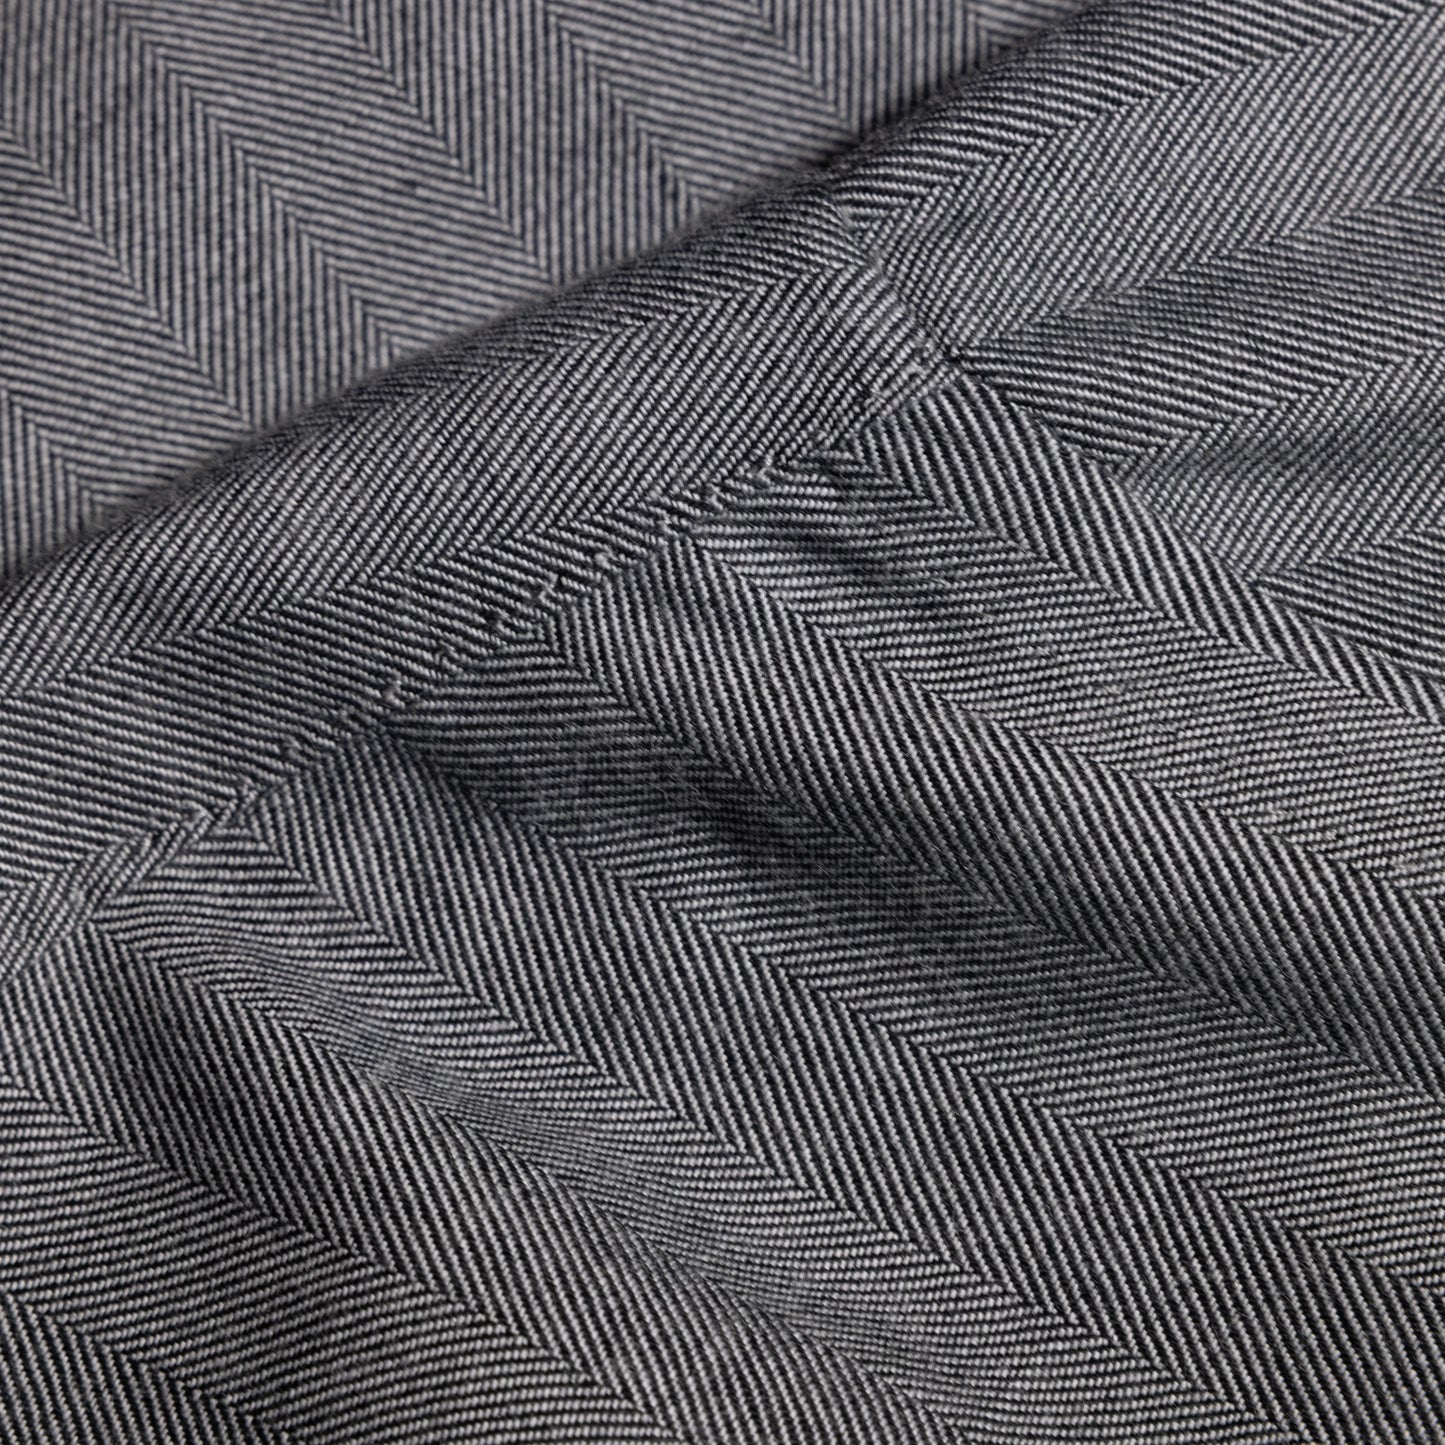 Shirt Dubai grey Swiss Cotton and Cashmere herringbone